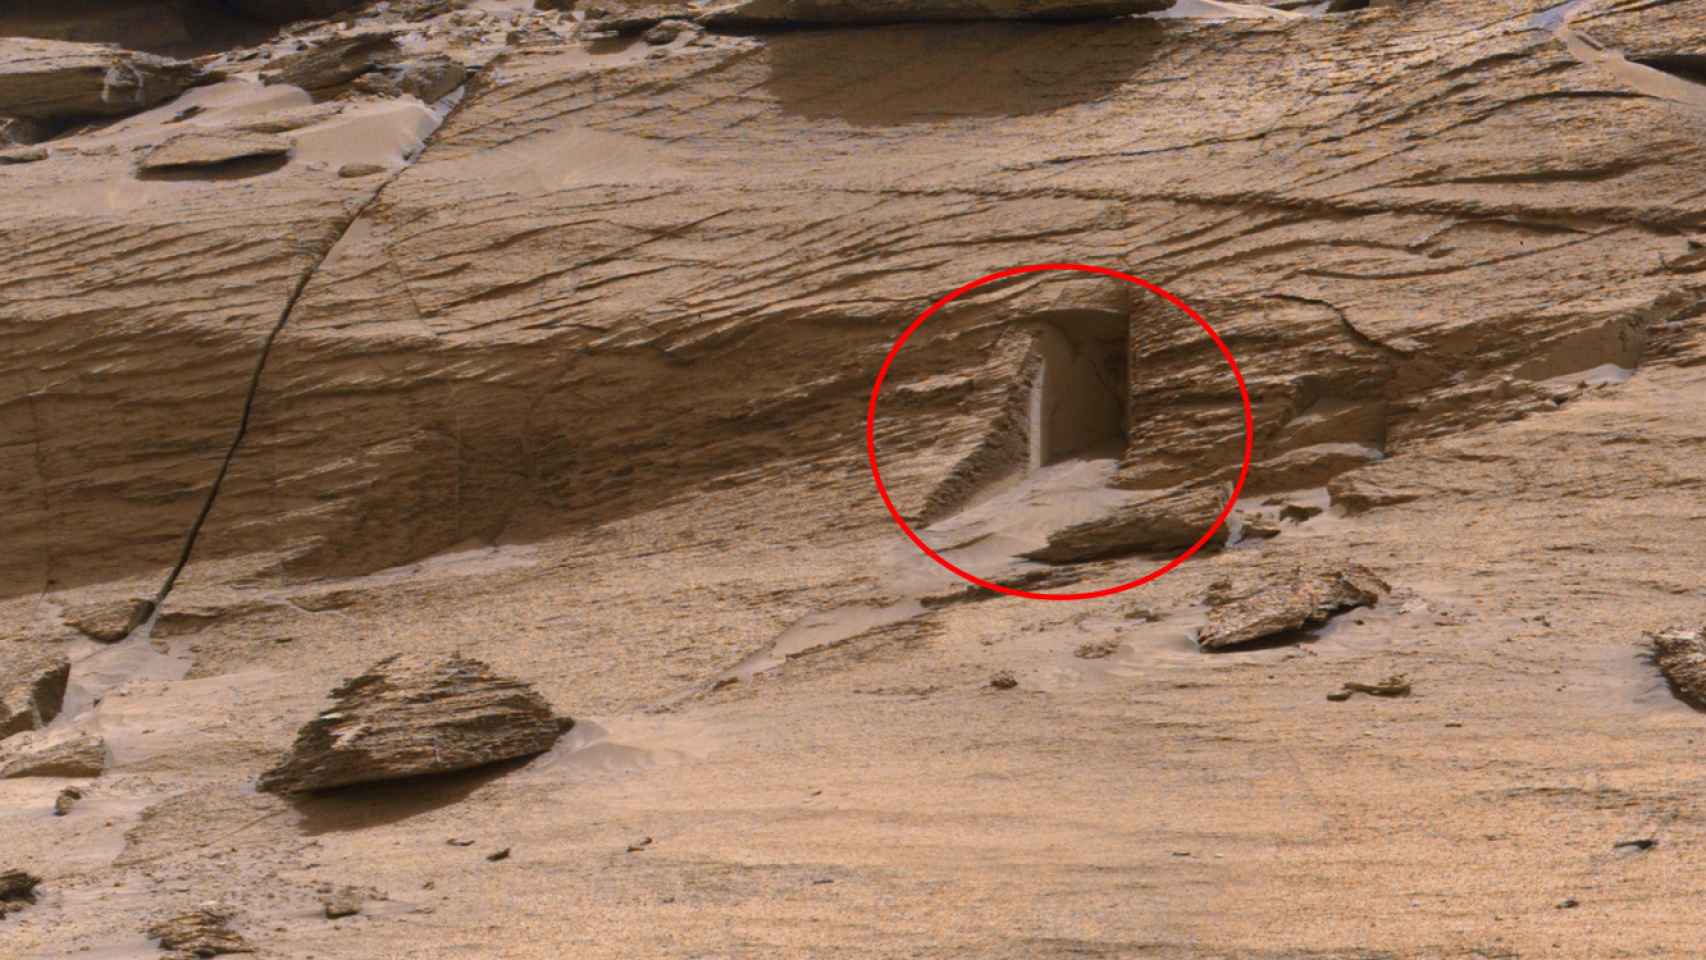 Una puerta en Marte? la enigmática foto tomada por el rover de la NASA